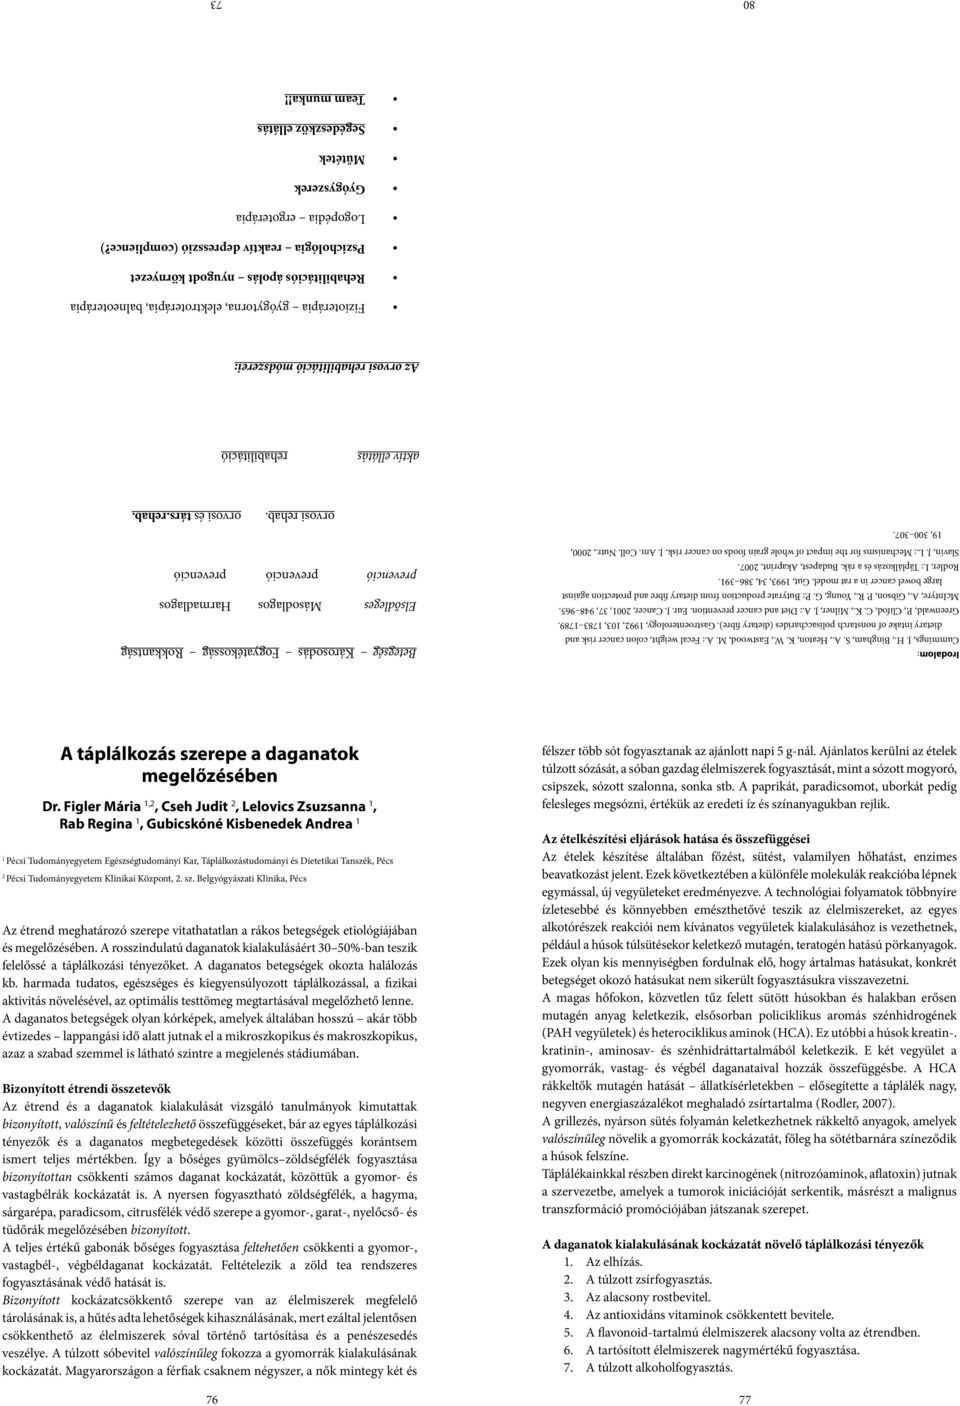 Gut, 1993, 34, 386 391. Rodler, I.: Táplálkozás és a rák. Budapest, Akaprint, 2007. Slavin, J. L.: Mechanisms for the impact of whole grain foods on cancer risk. J. Am. Coll. Nutr., 2000, 19, 300 307.